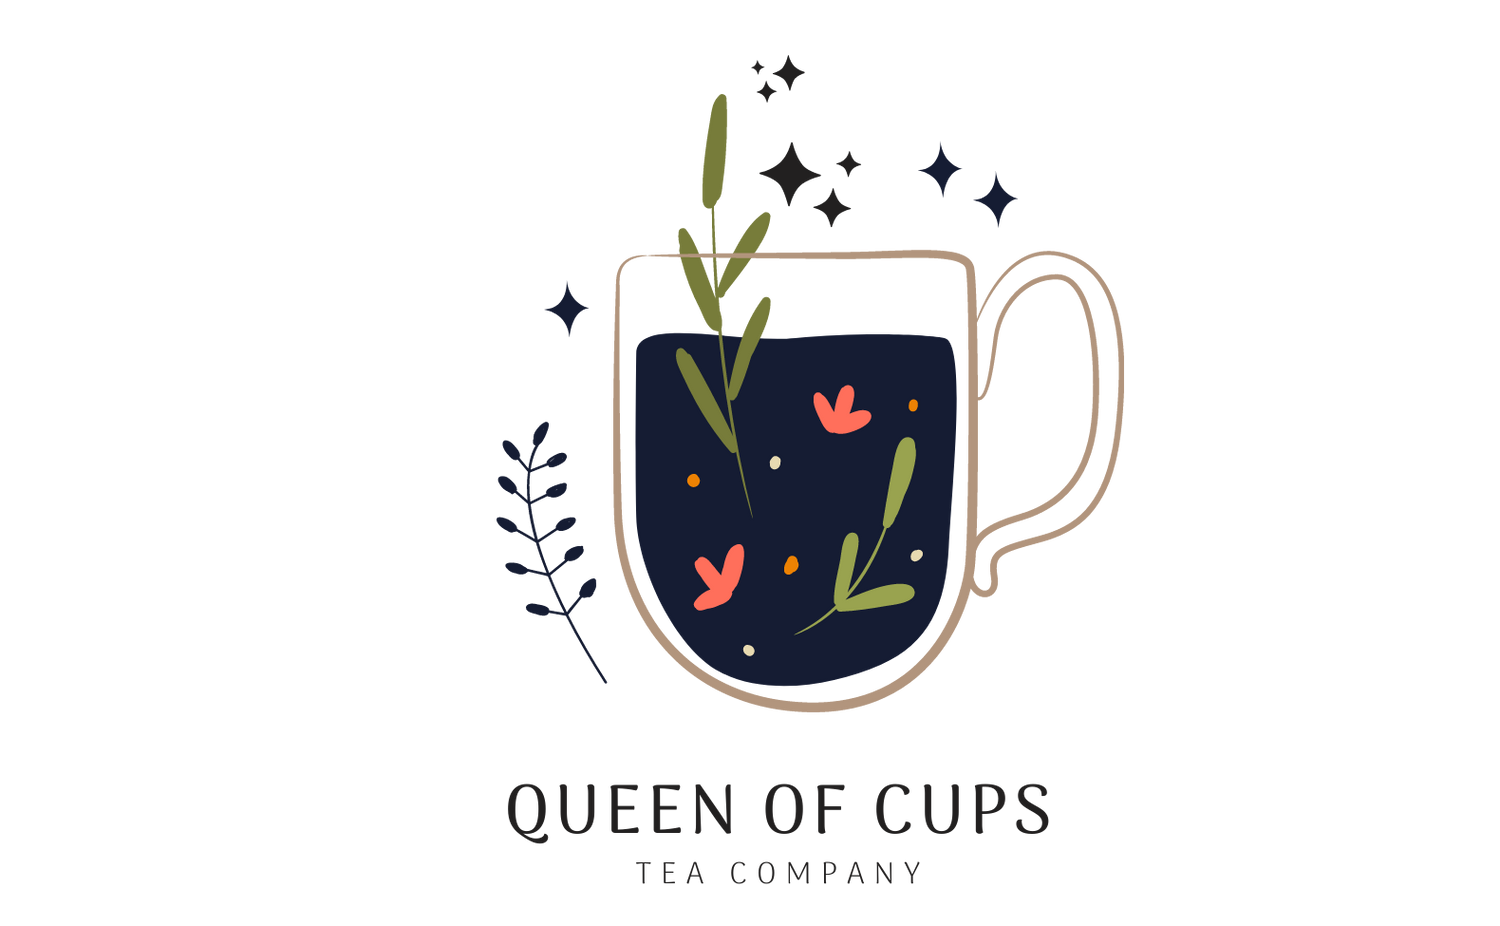 Tea Company Queen of Cups, Herbal Tea